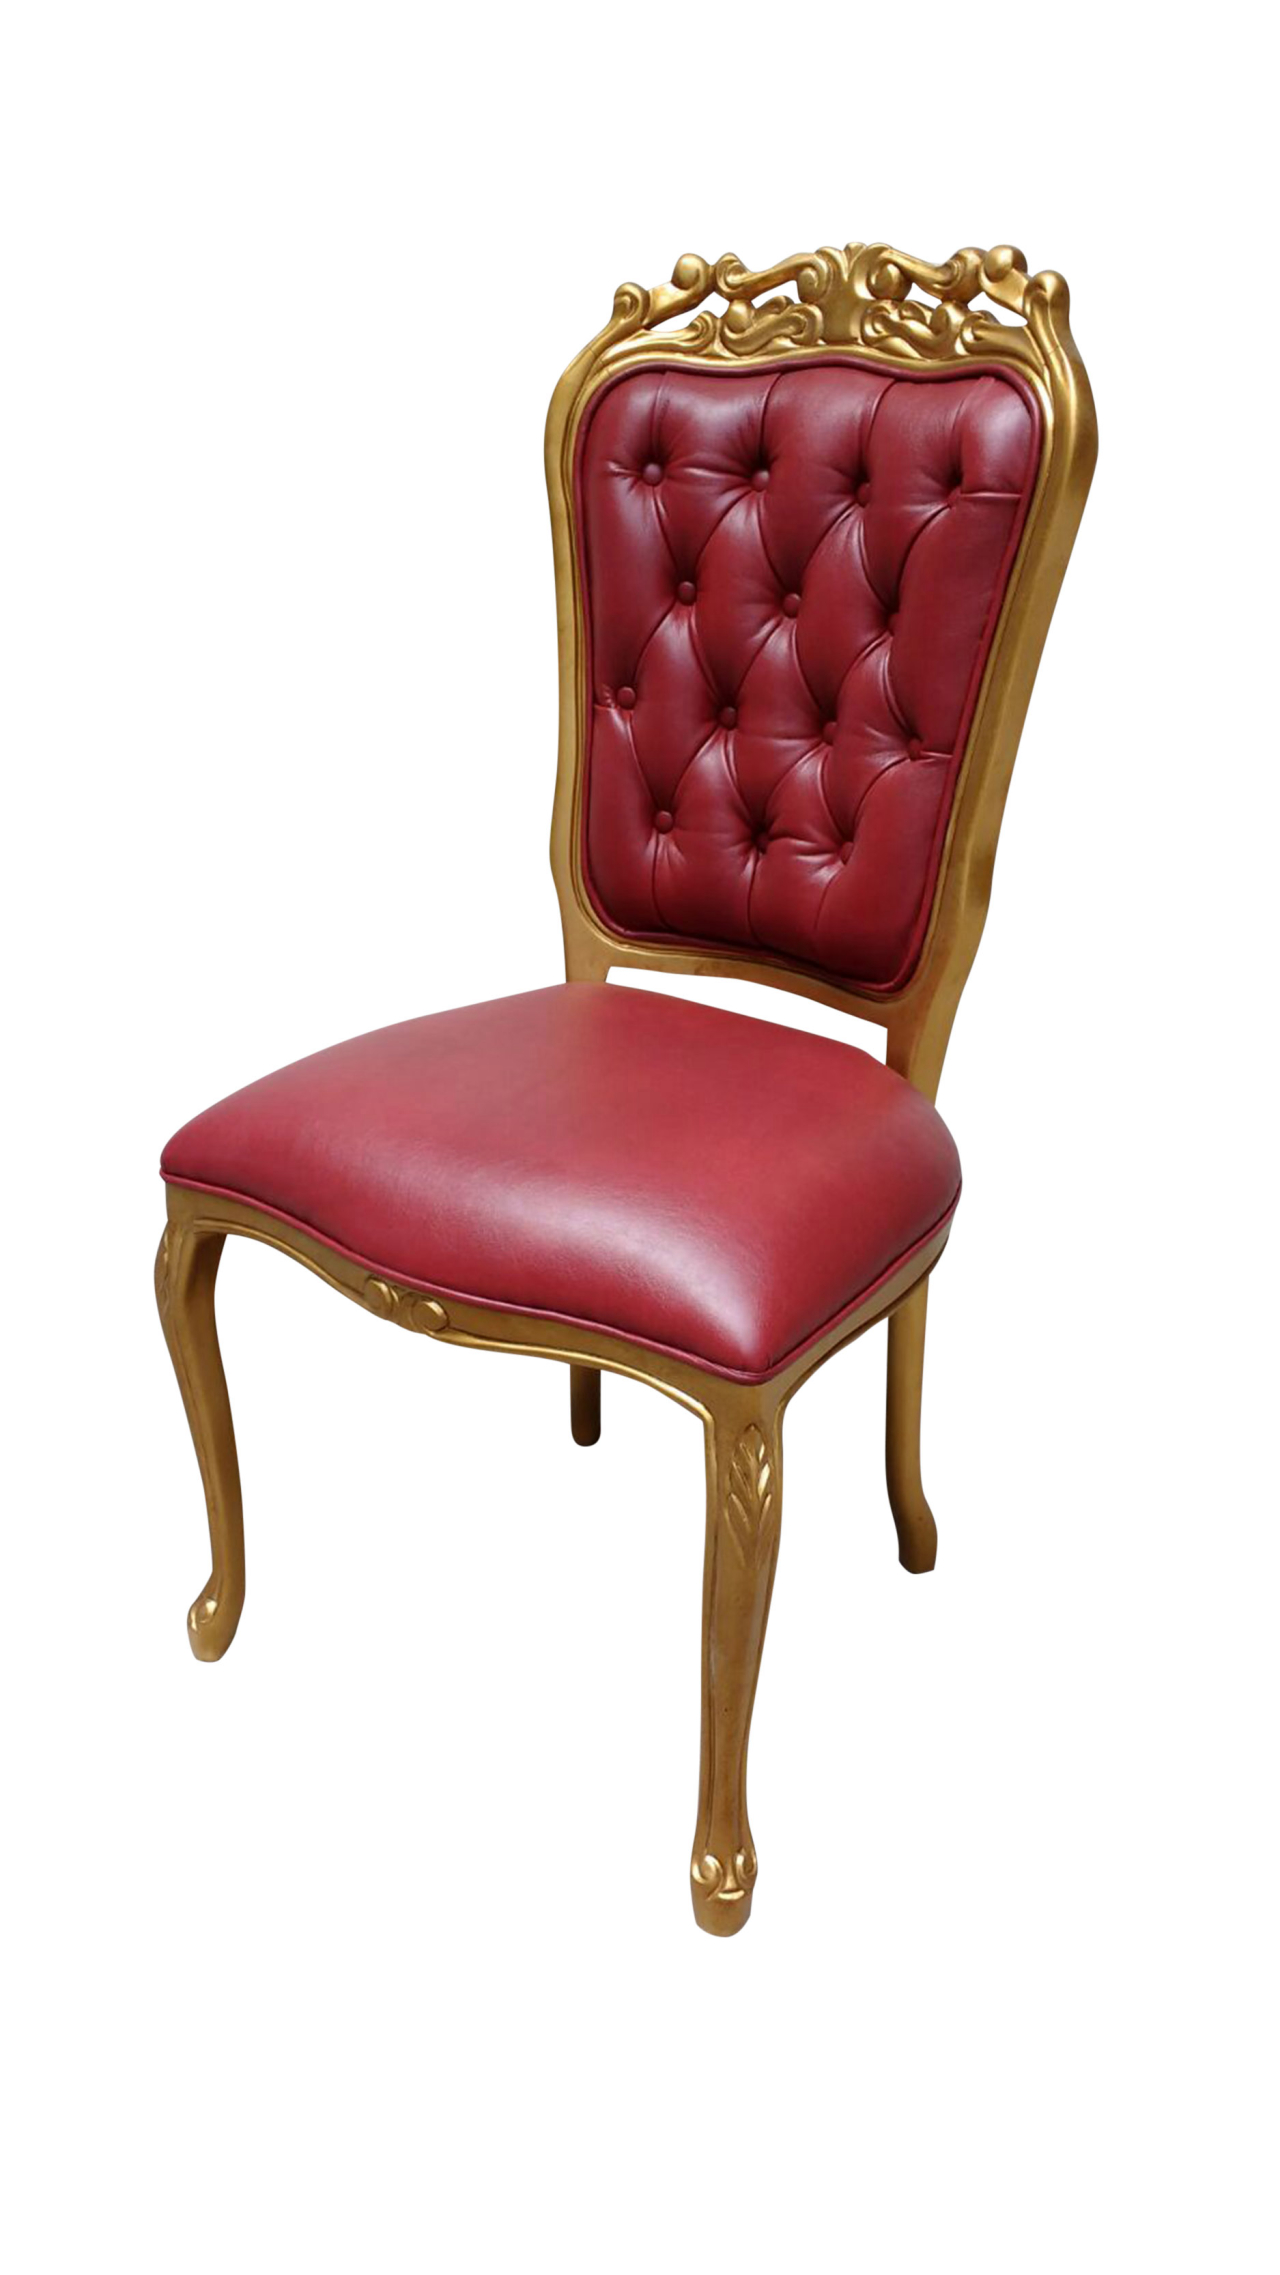 Cadeira Luis XV. No Atelier Clássico.